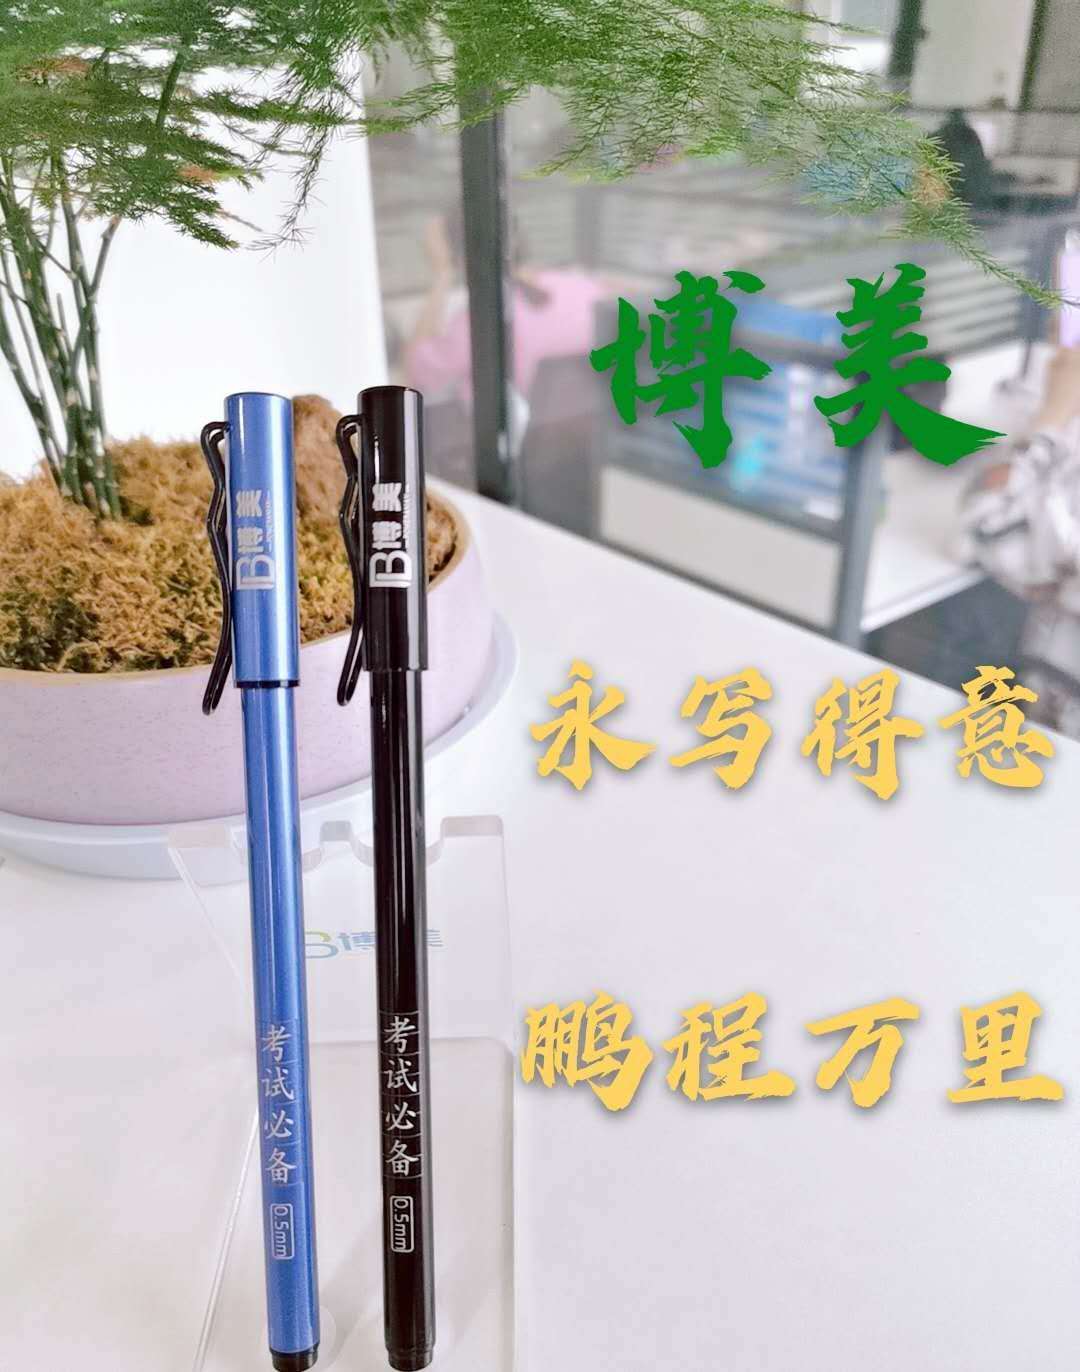 笔芯加工2020年在家做手工加工，南昌博美笔业笔芯加工提供真实的代加工项目